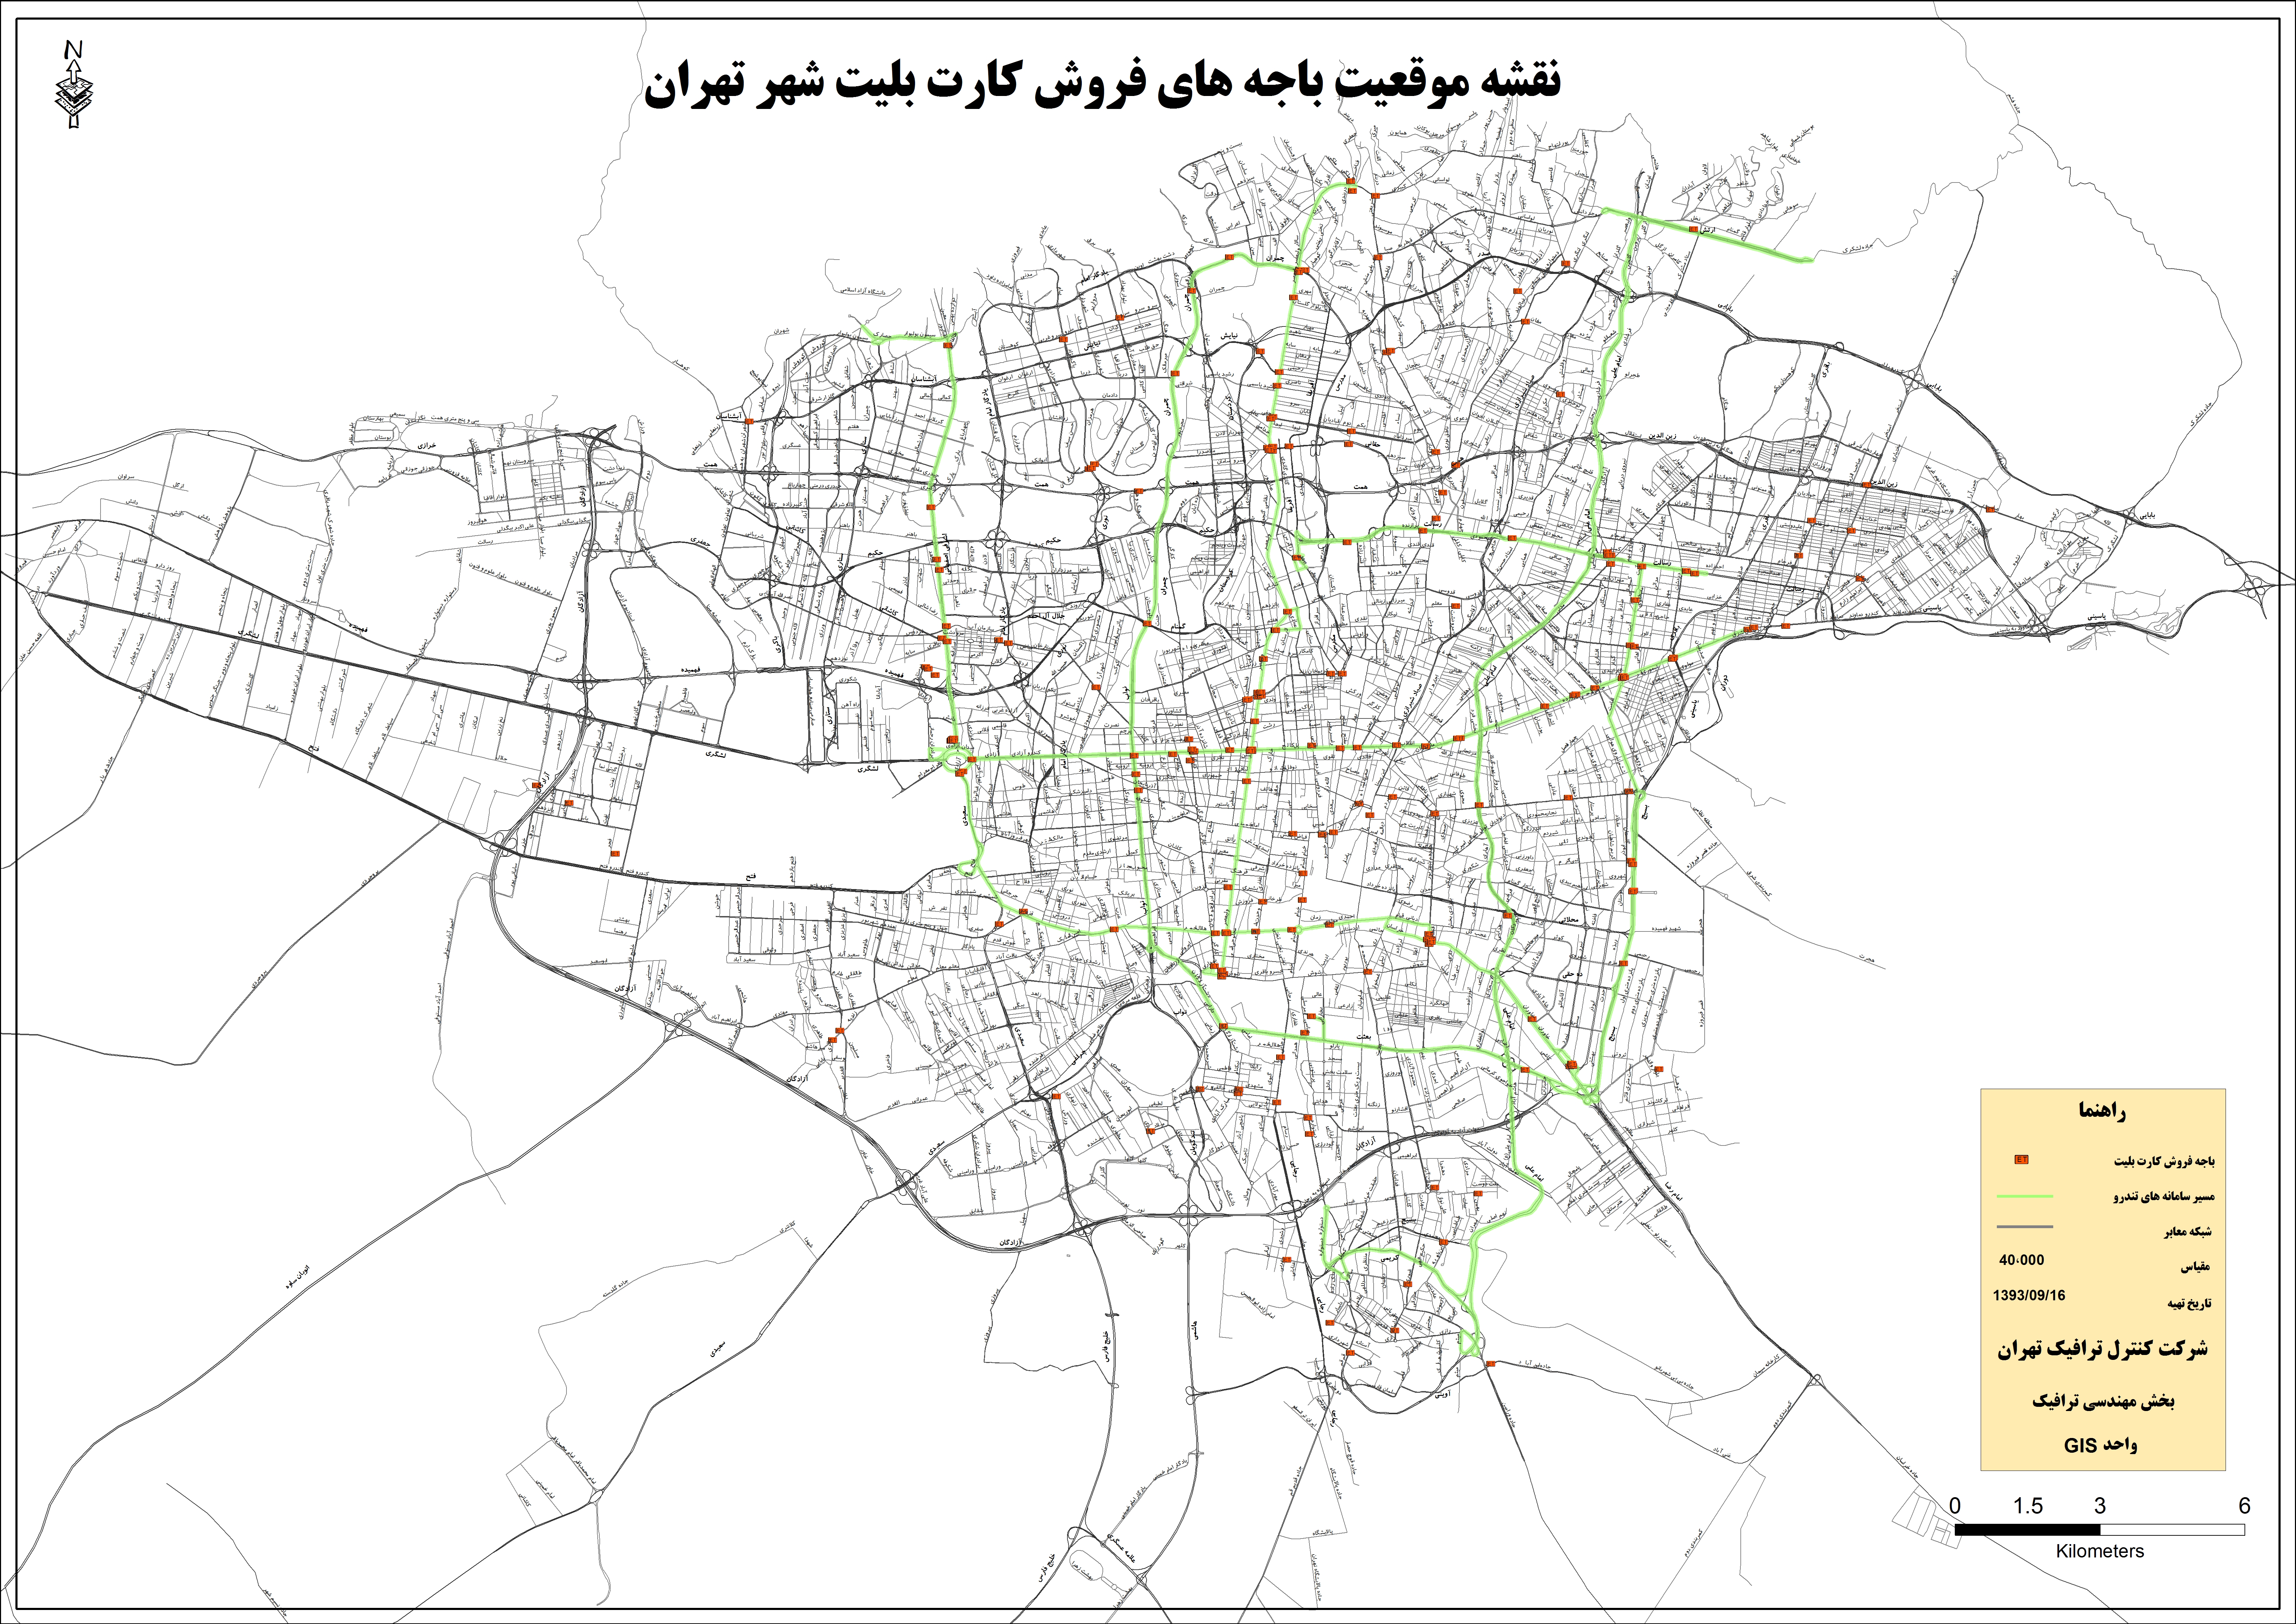 نقشه محل فروش بلیط طرح ترافیک تهران و محدوده زوج و فرد